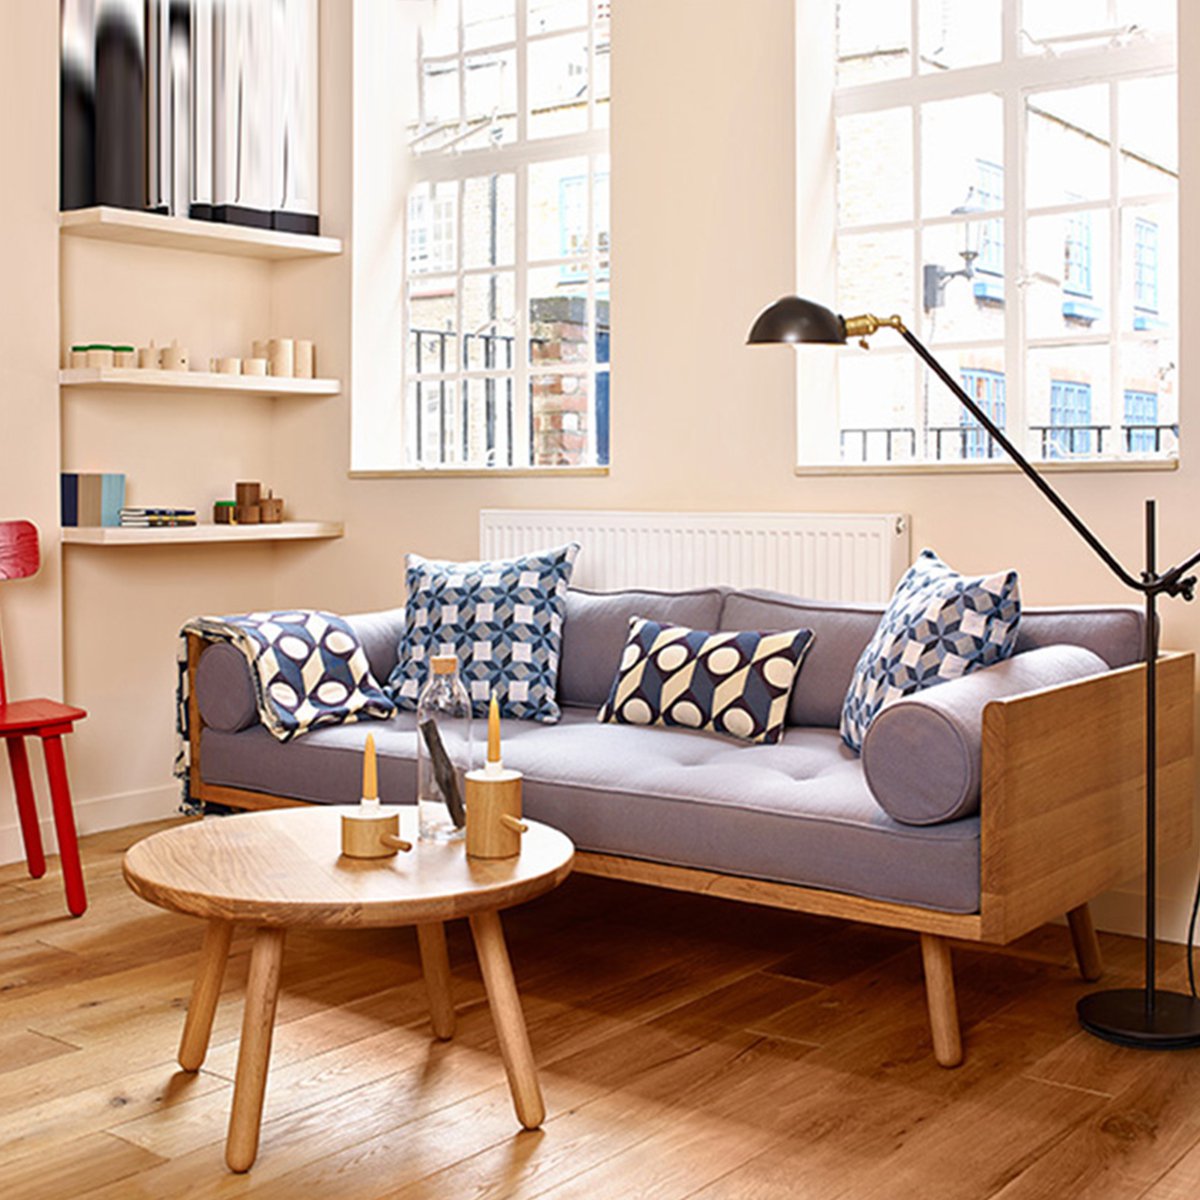 小才子北欧日式布艺沙发小户型客厅三人组合简约现代实木家用家具